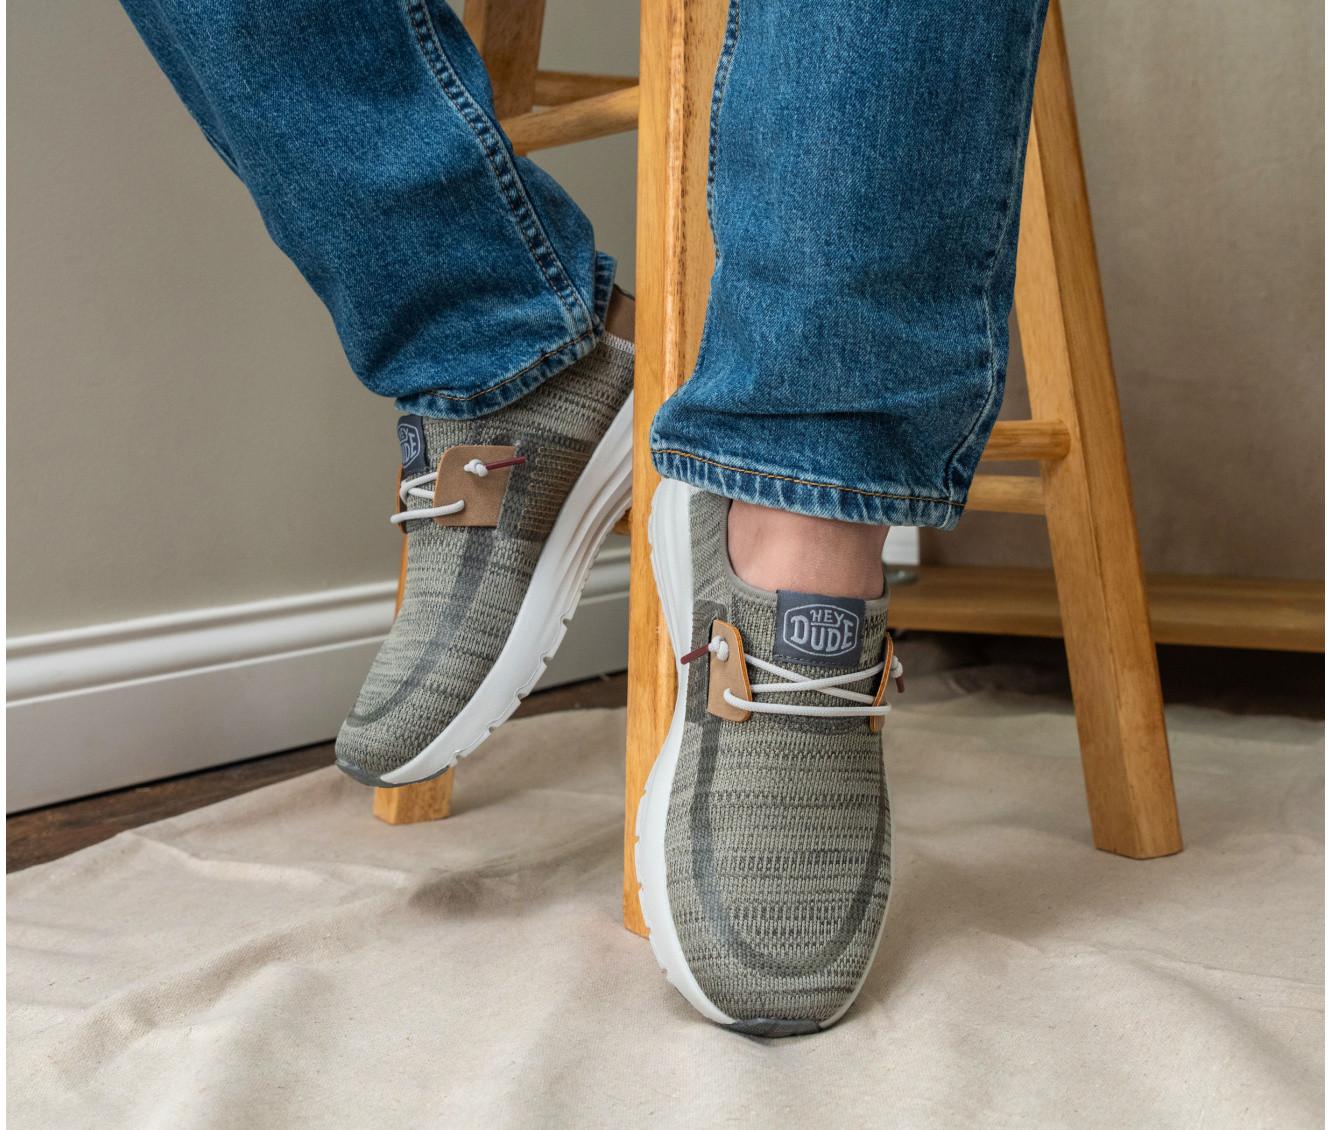 HEYDUDE Men's Sirocco Slip-On Sneakers